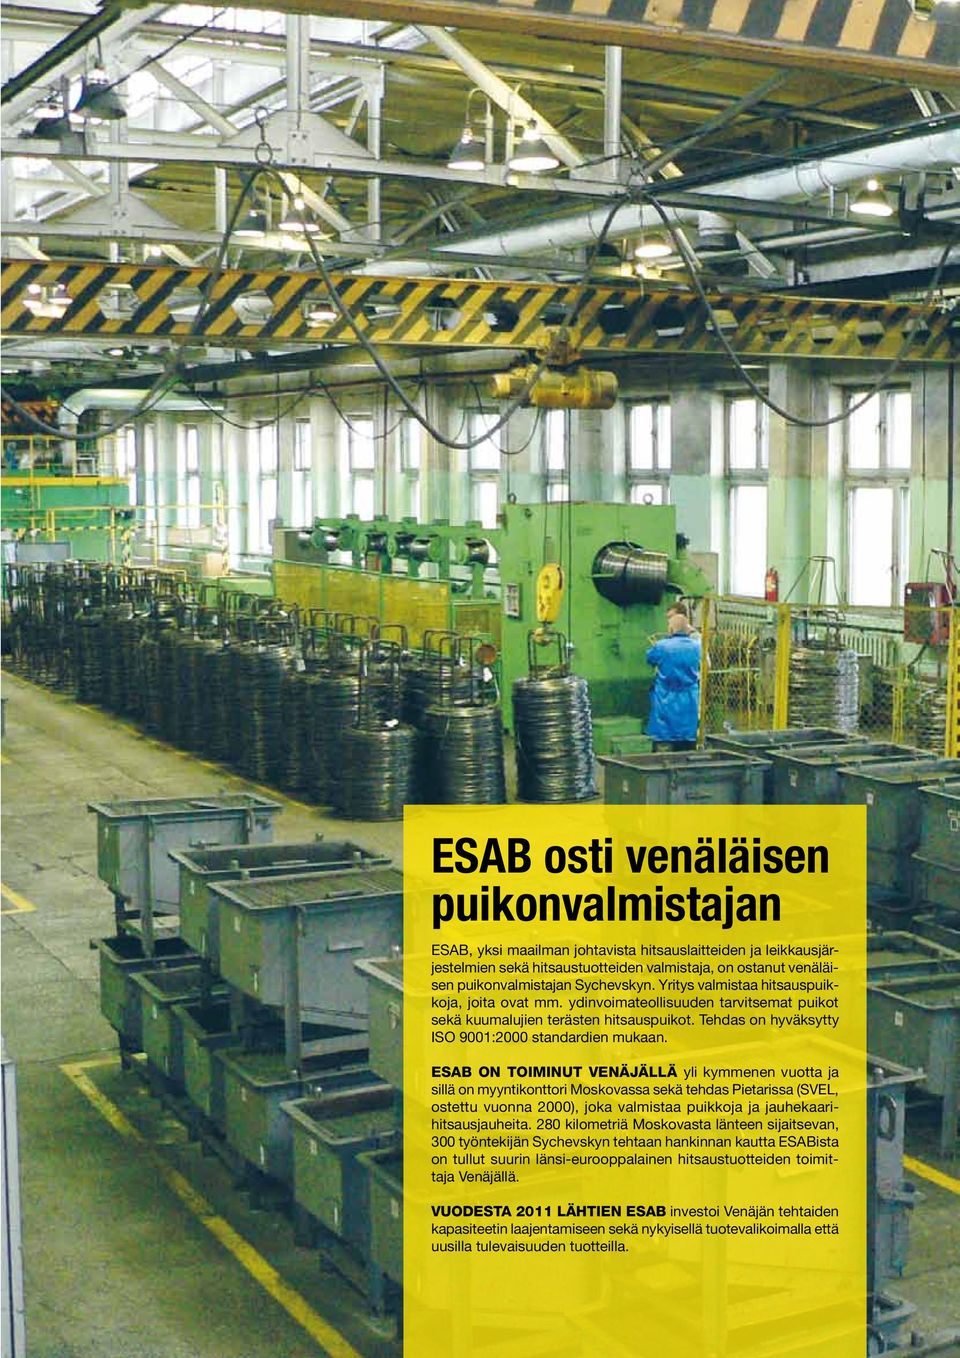 ESAB on toiminut Venäjällä yli kymmenen vuotta ja sillä on myyntikonttori Moskovassa sekä tehdas Pietarissa (SVEL, ostettu vuonna 2000), joka valmistaa puikkoja ja jauhekaarihitsausjauheita.